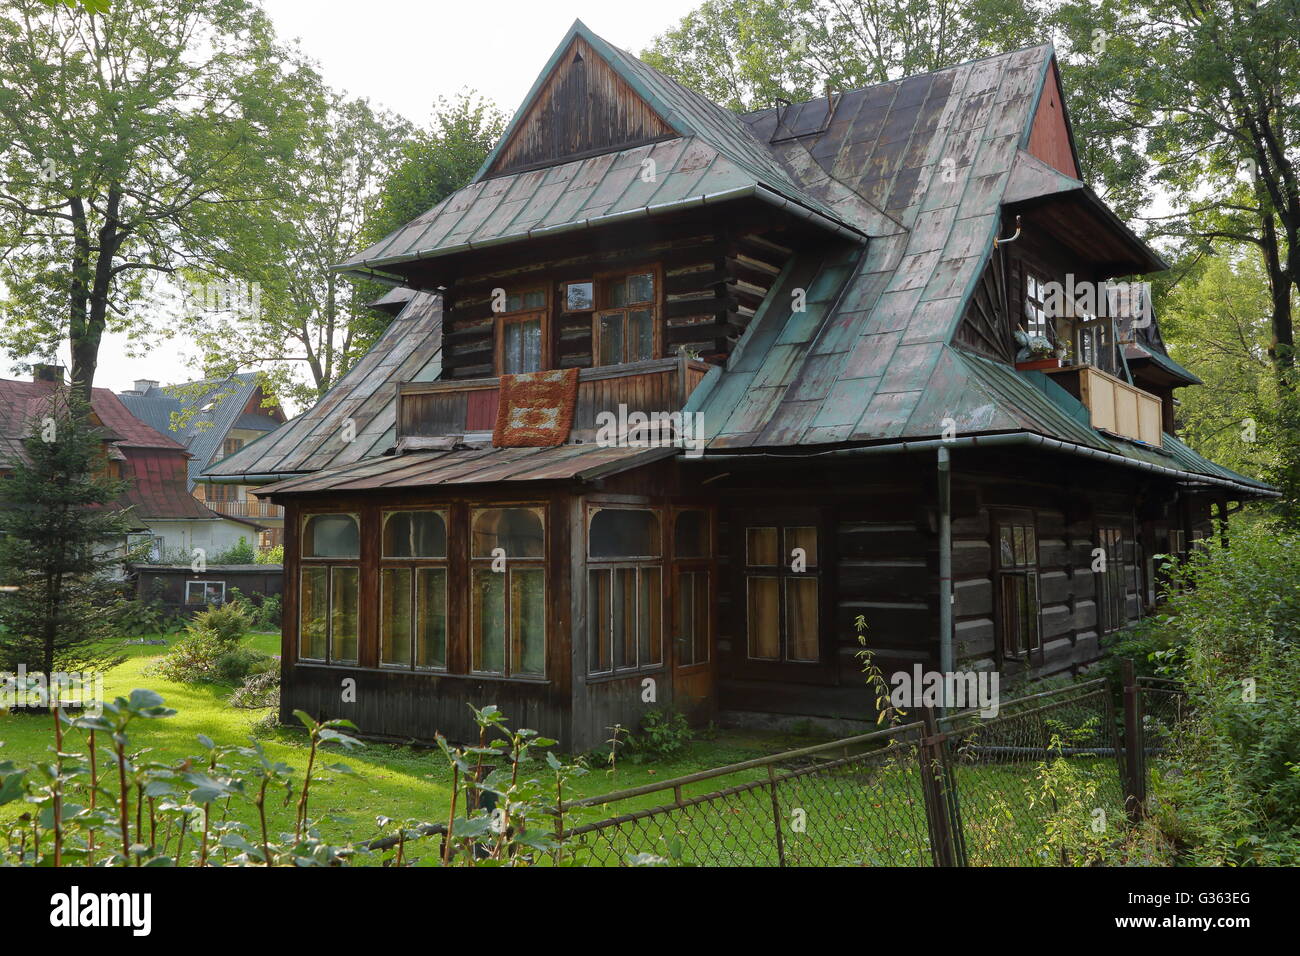 Wooden house in Zakopane, Tatras Mountains, Poland Stock Photo - Alamy